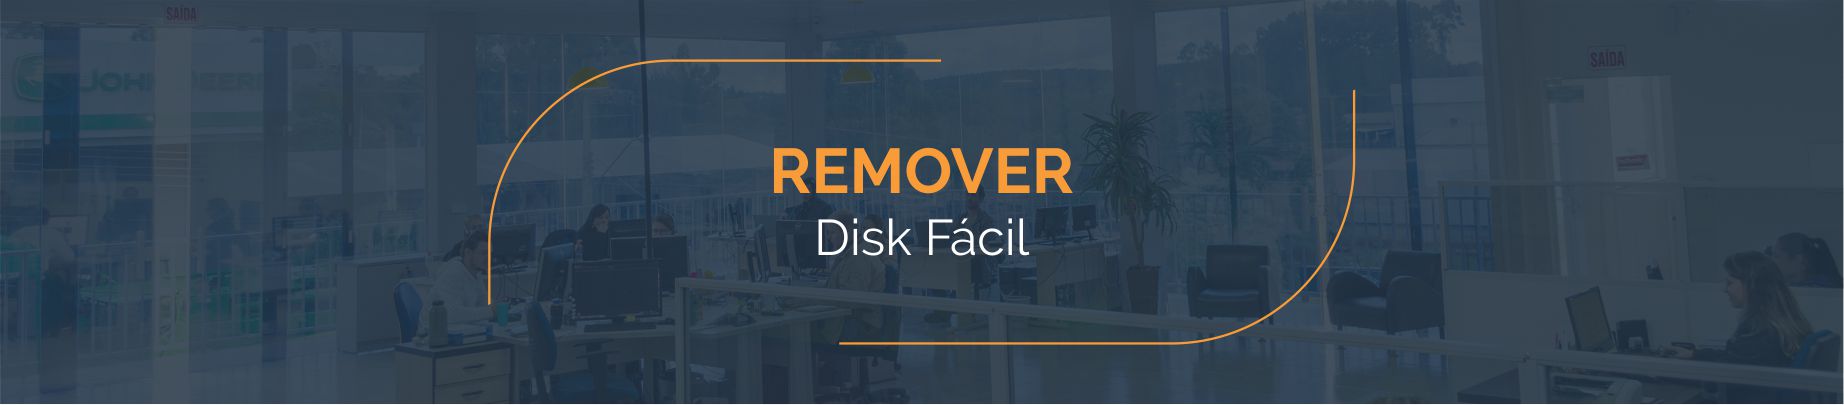 Remover Informações - Disk Fácil Listas Telefônicas